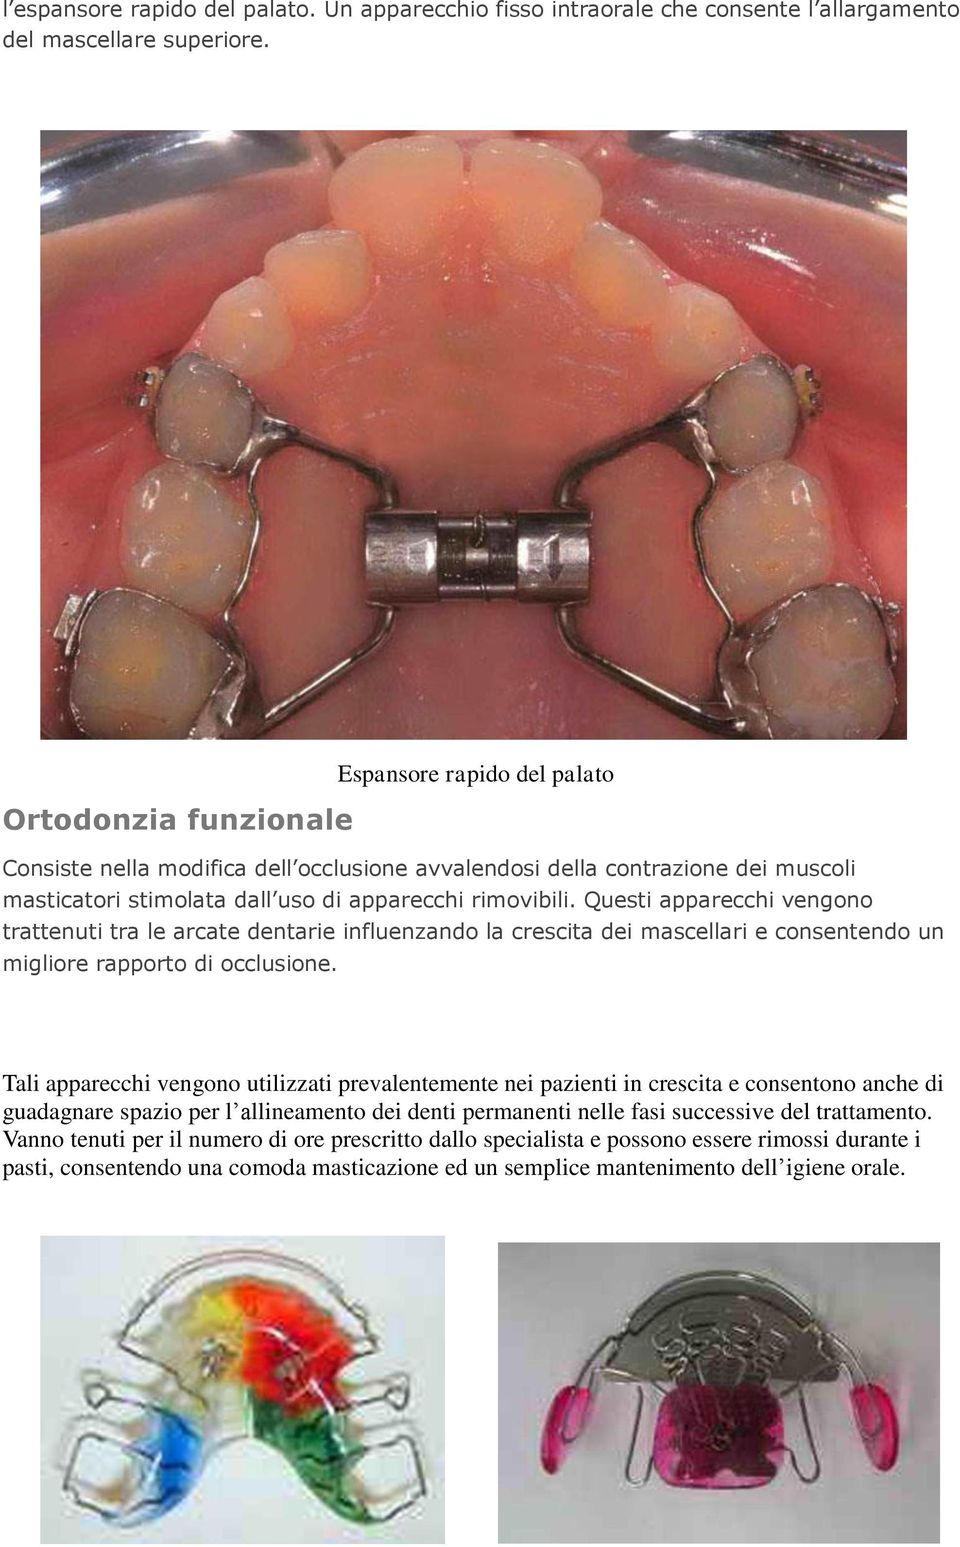 Questi apparecchi vengono trattenuti tra le arcate dentarie influenzando la crescita dei mascellari e consentendo un migliore rapporto di occlusione.